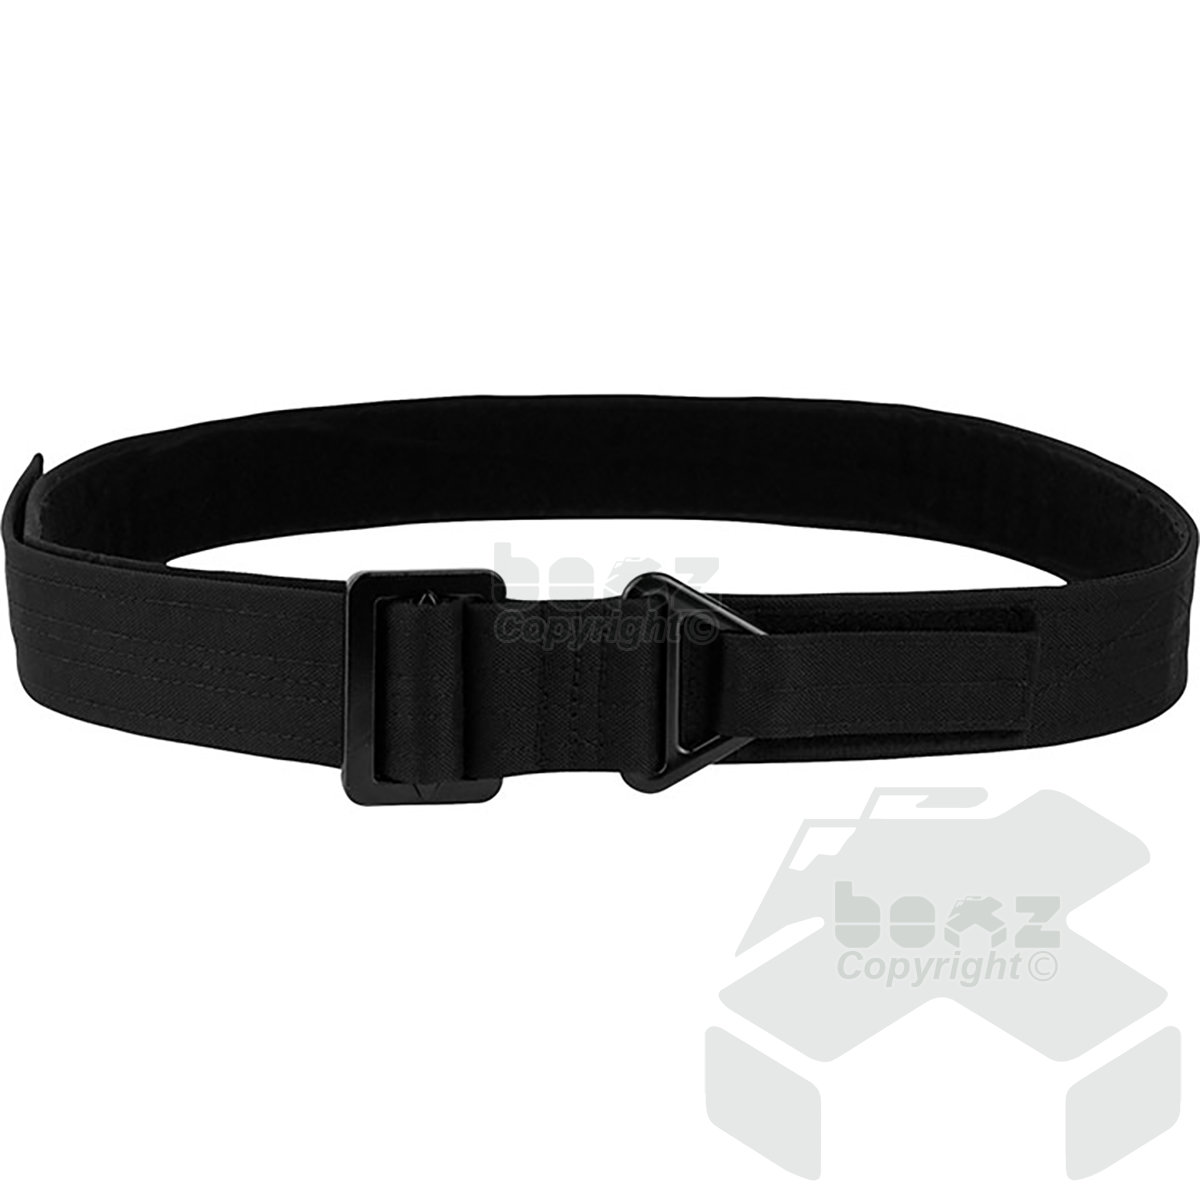 Viper Rigger Belt - Black